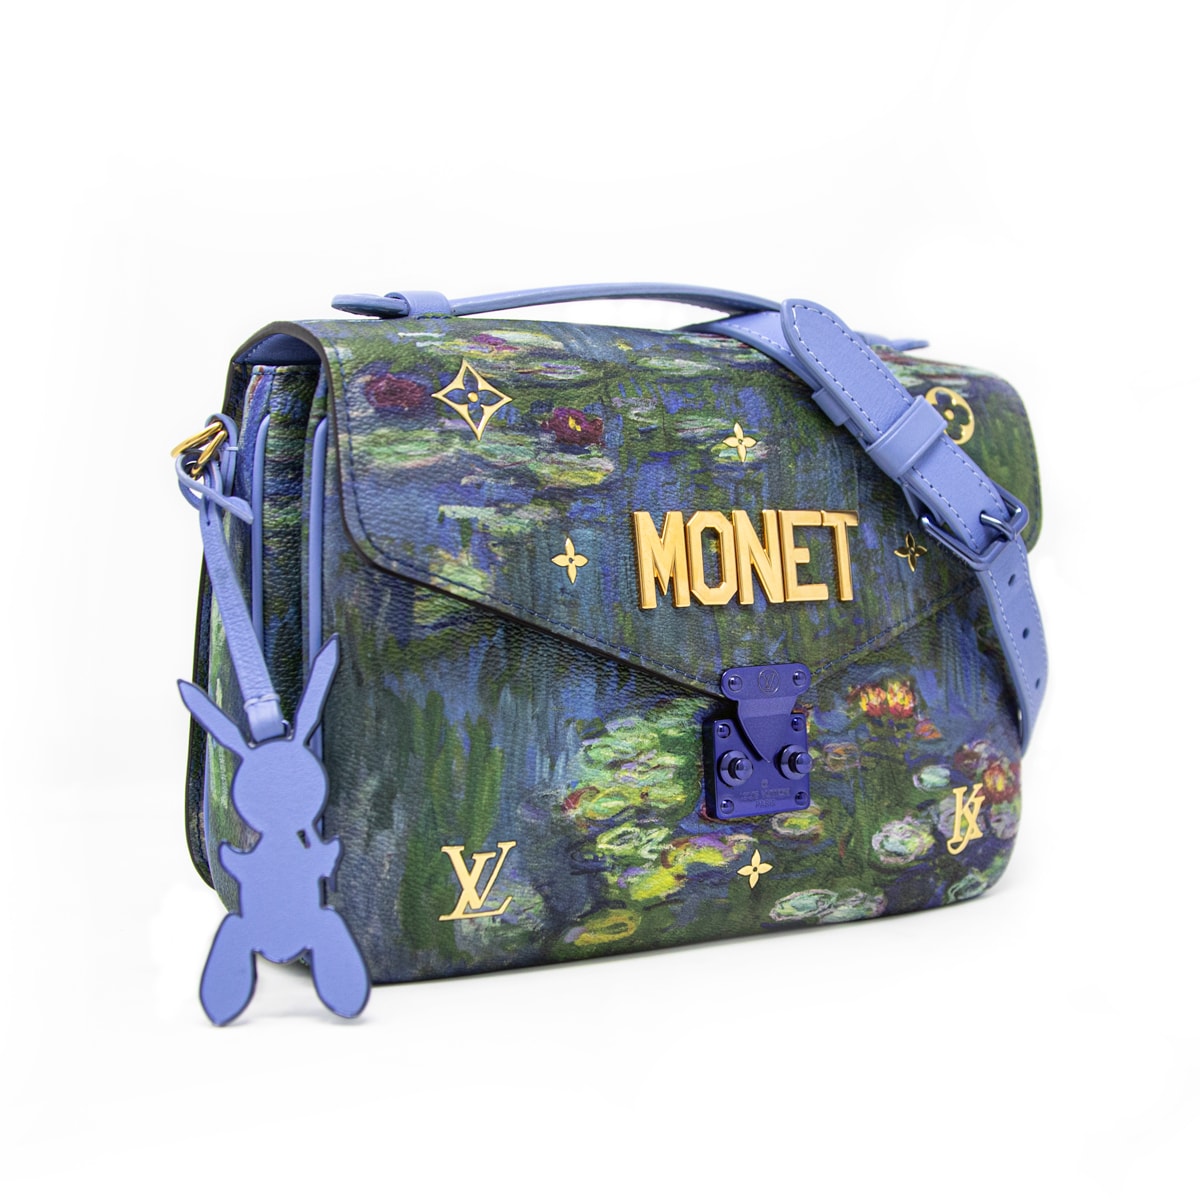 Vuitton Metis Monet bag